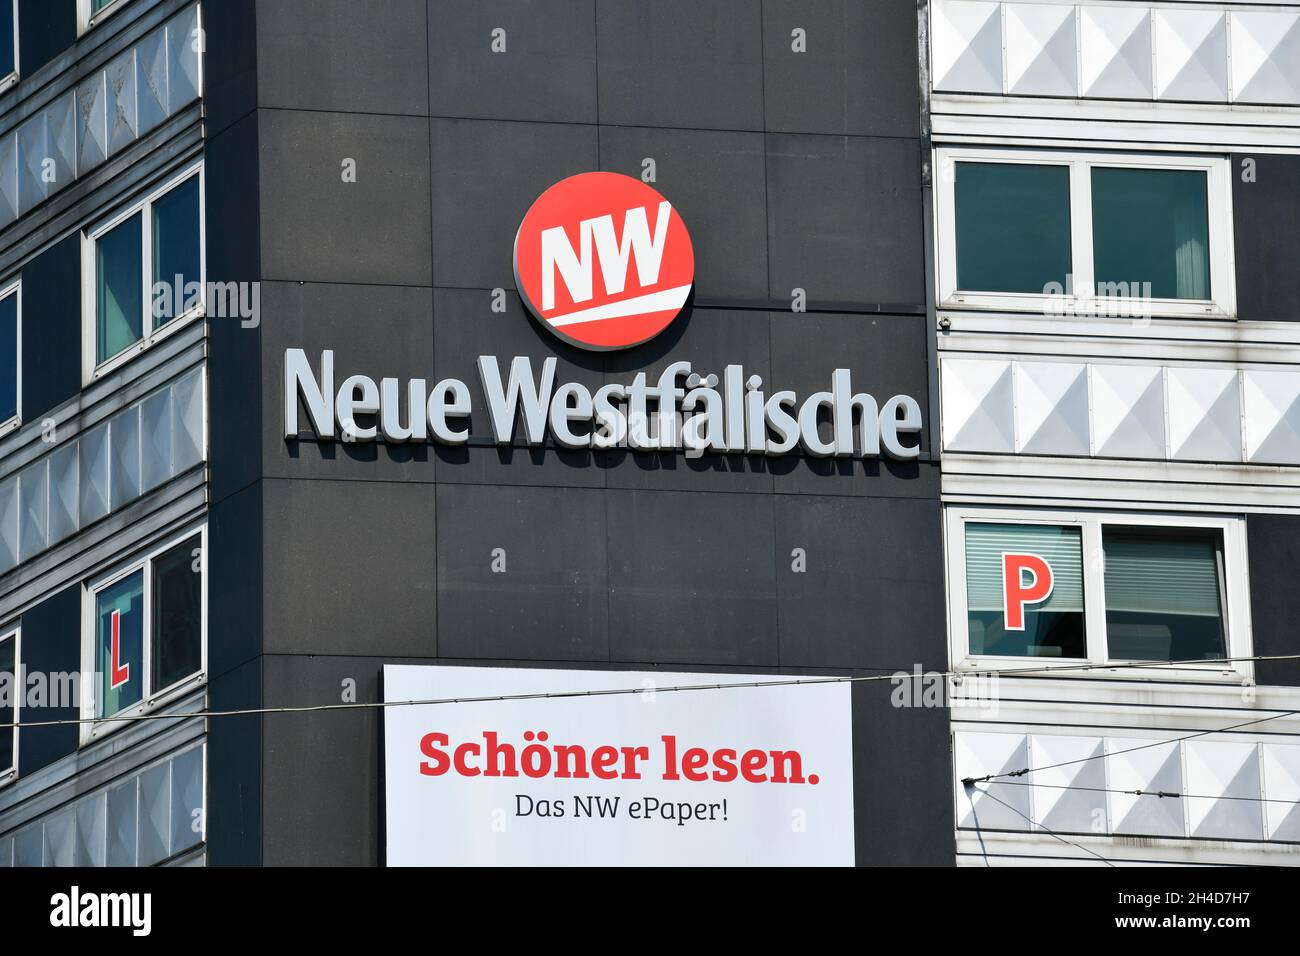 Werbung Tageszeitung Neue Westfälische, Jahnplatz, Bielefeld, Nordrhein-Westfalen, Deutschland Stock Photo